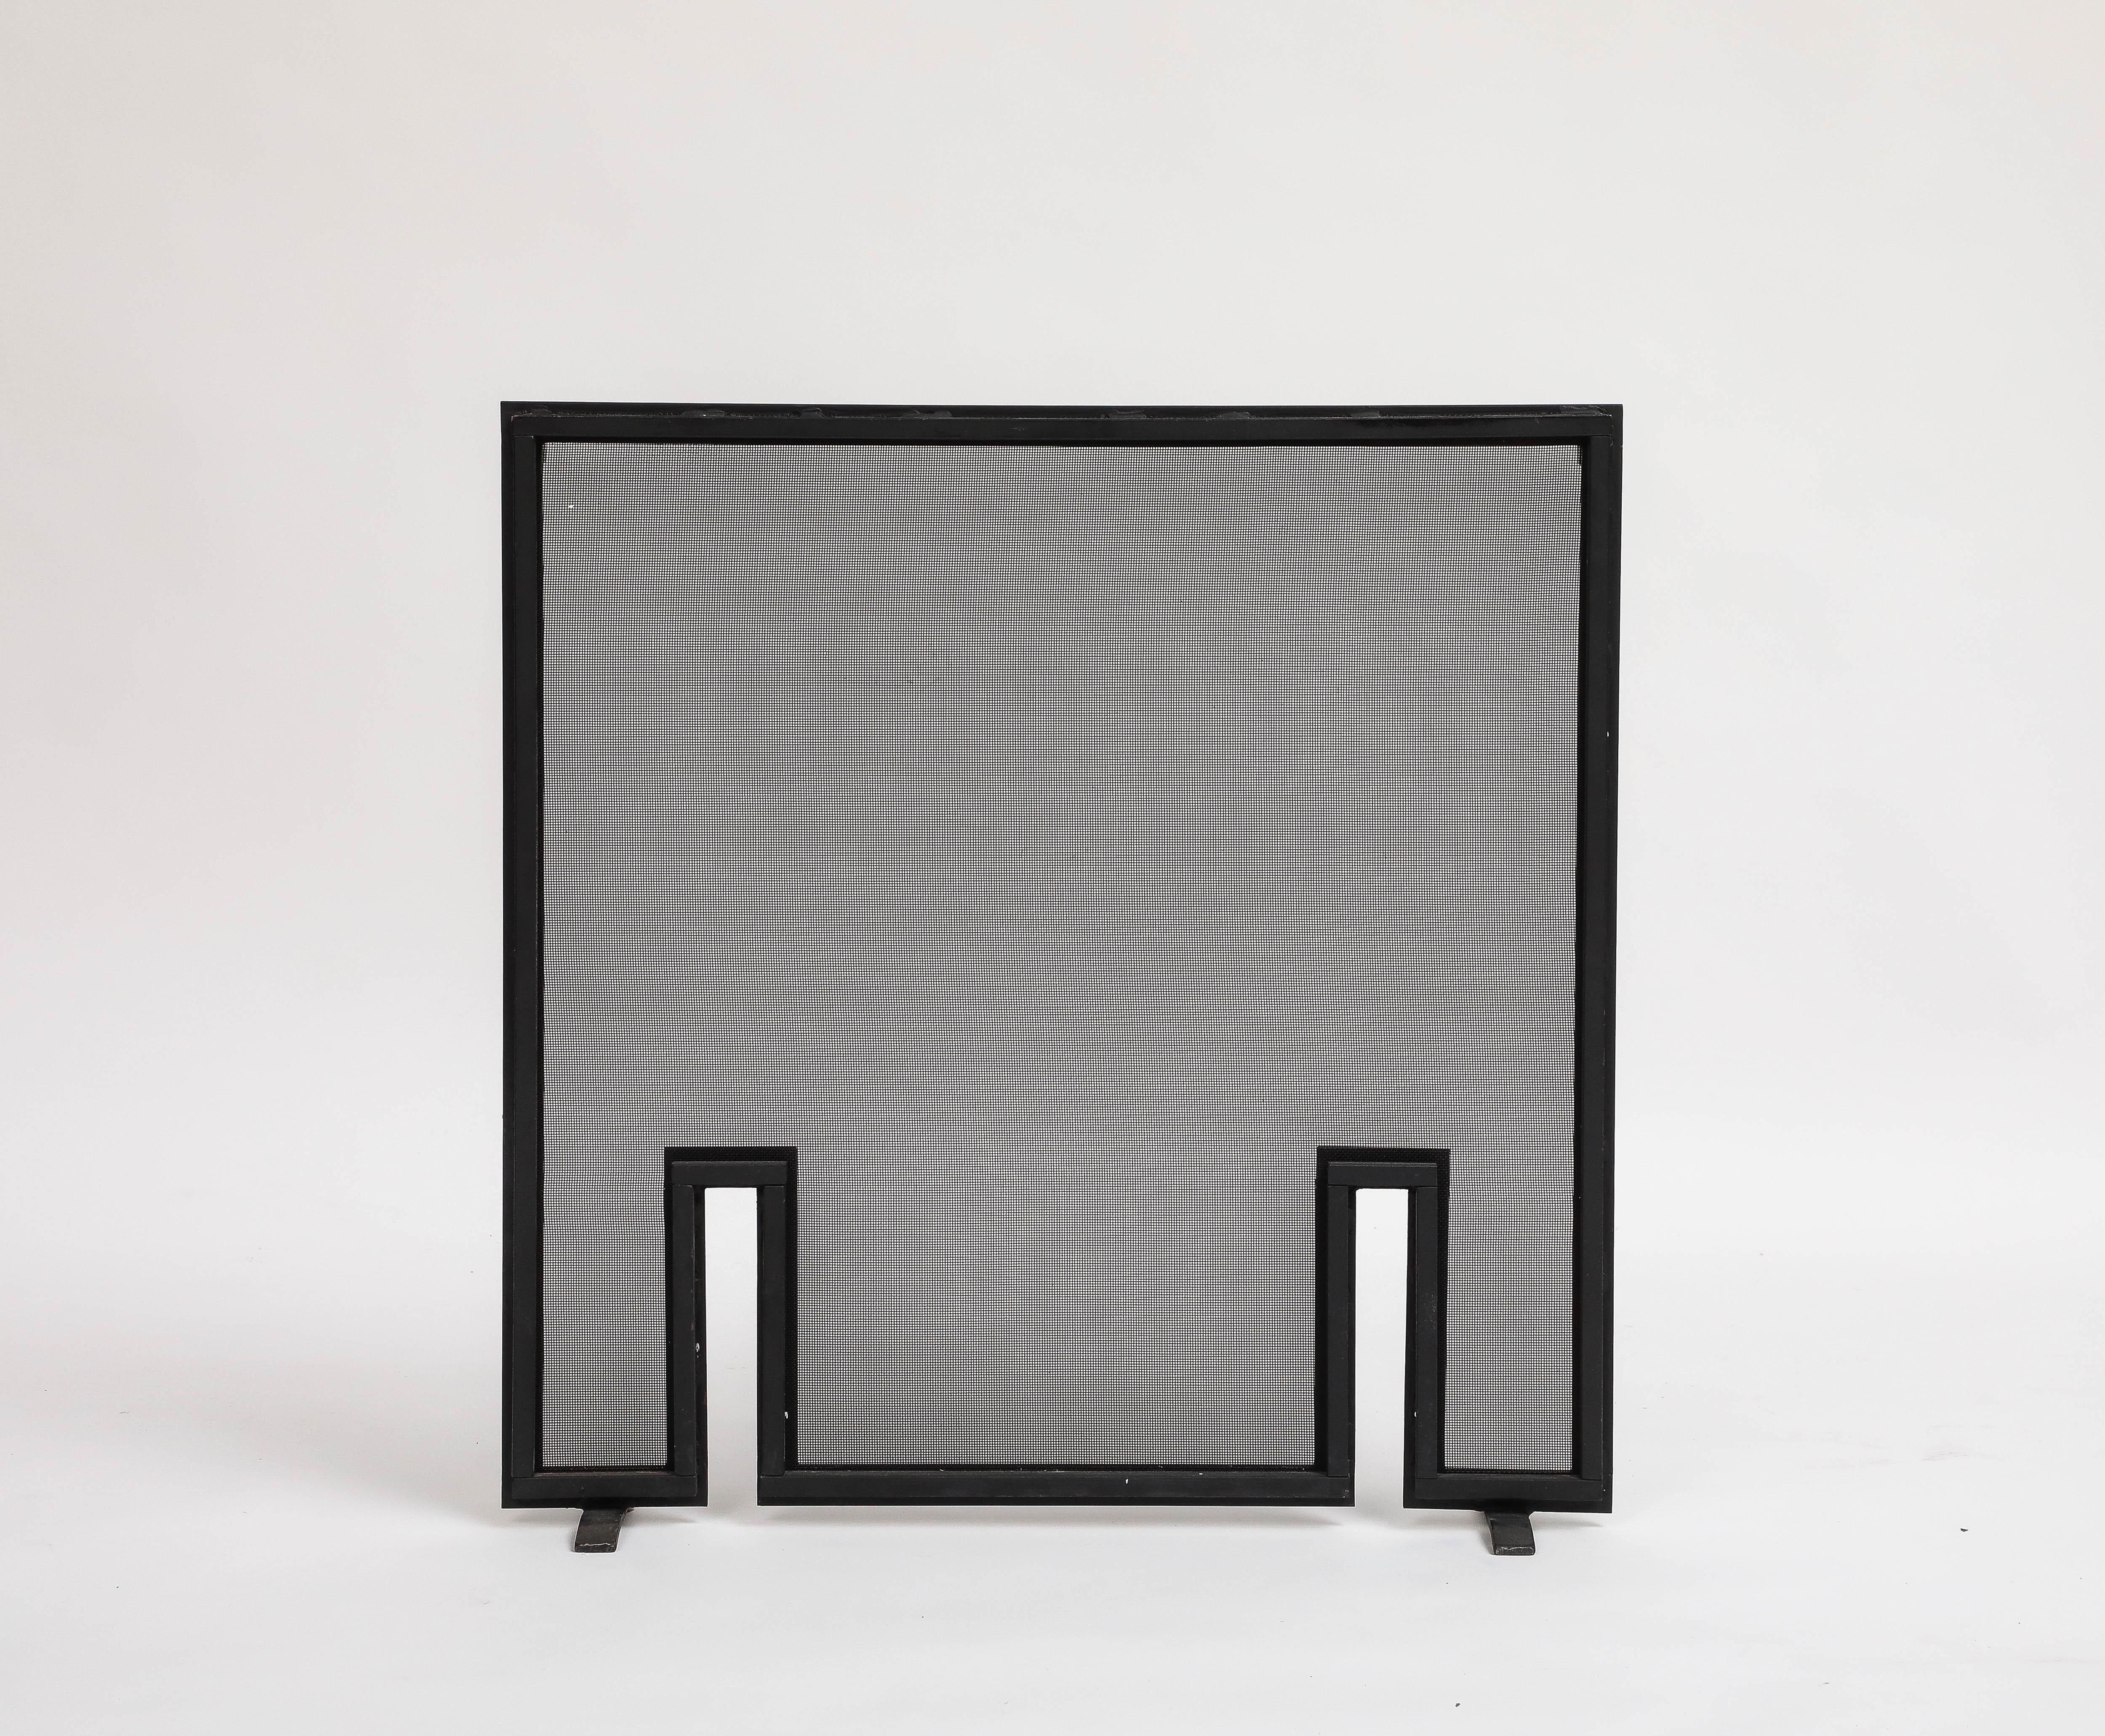 Zeitgenössischer schwarzer Metallgitter-Kaminschirm, 21. Jahrhundert. Ein minimalistischer schwarzer Metallrahmen und zwei Öffnungen in der Nähe der Füße verleihen ihm Interesse und Form. 